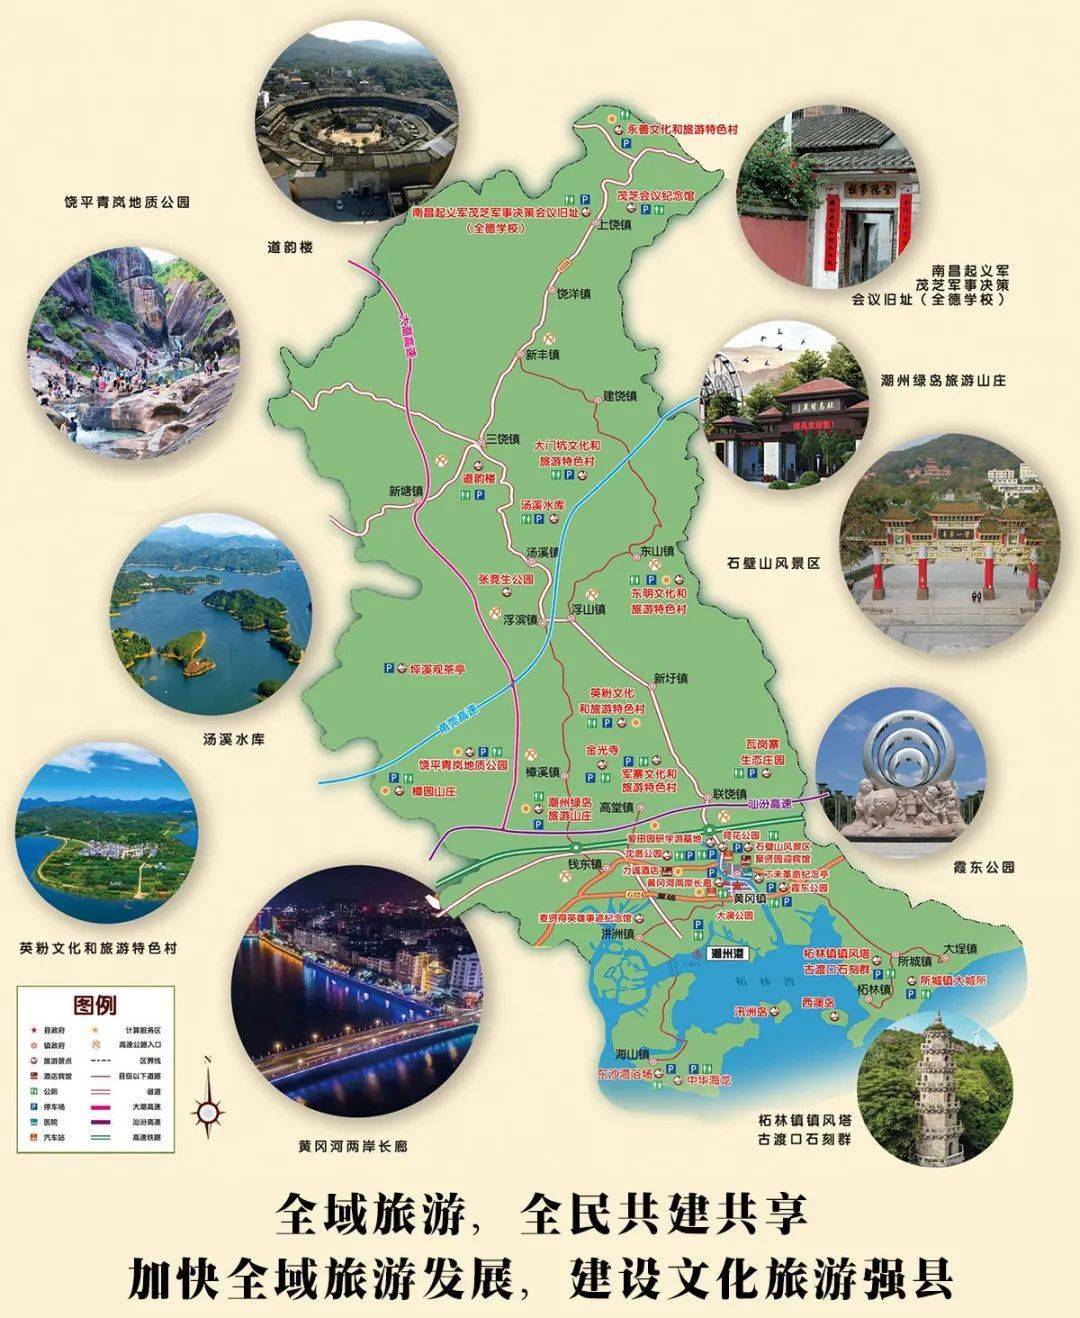 饶平县地图高清版大图图片